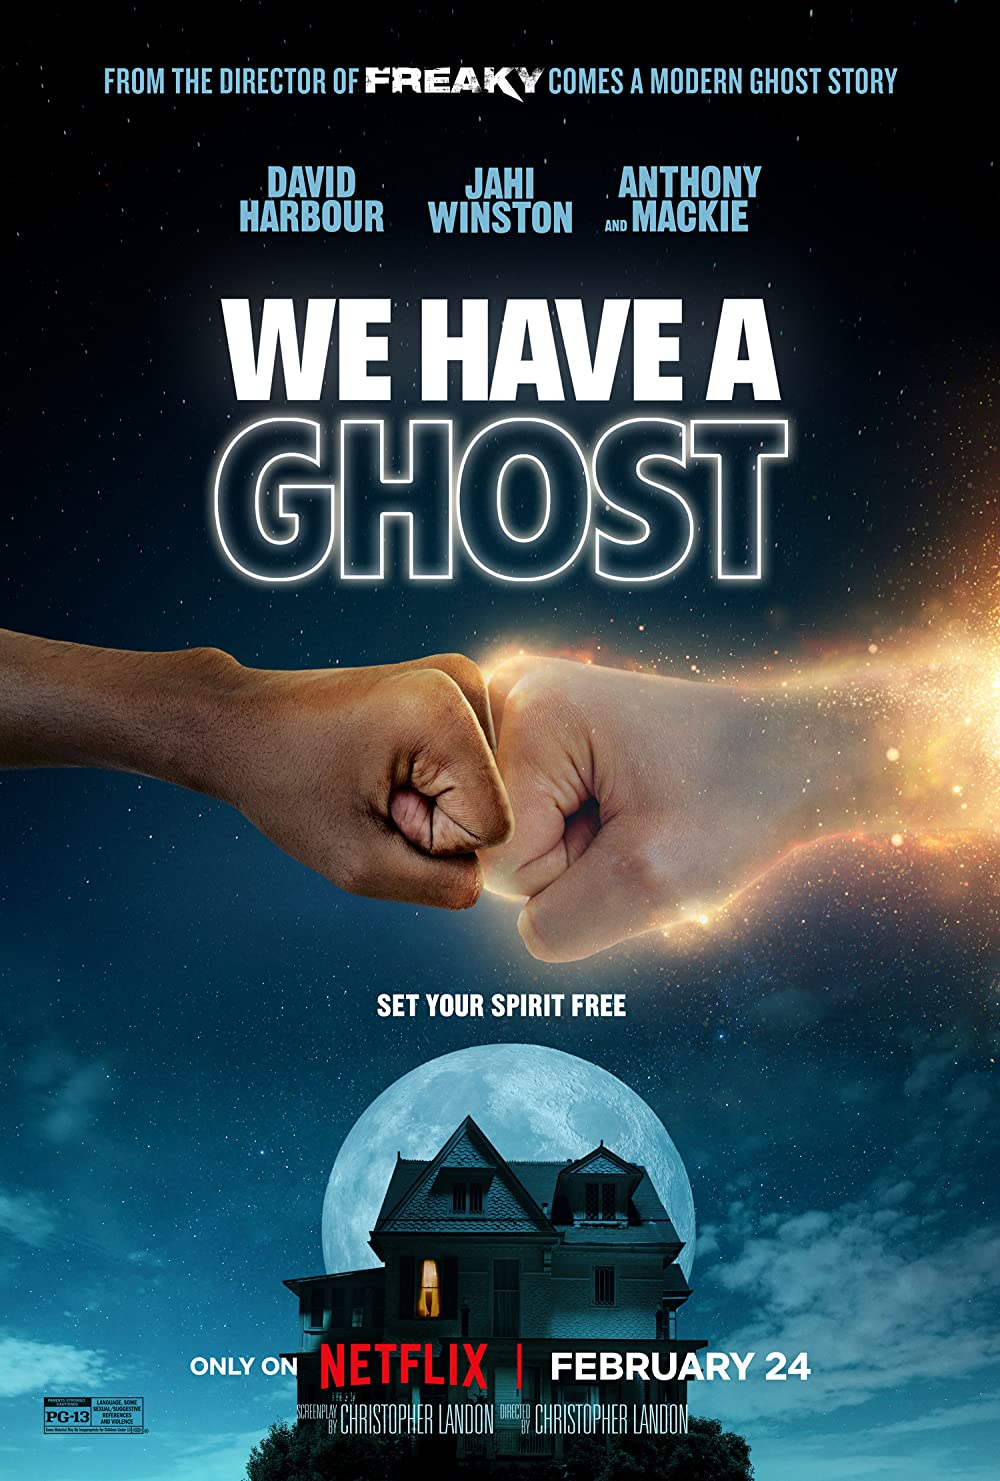 ดูหนังออนไลน์ฟรี ดูหนังออนไลน์ฟรี NETFLIX We Have a Ghost 2023 บ้านนี้มีผีป่วน moviehdfree